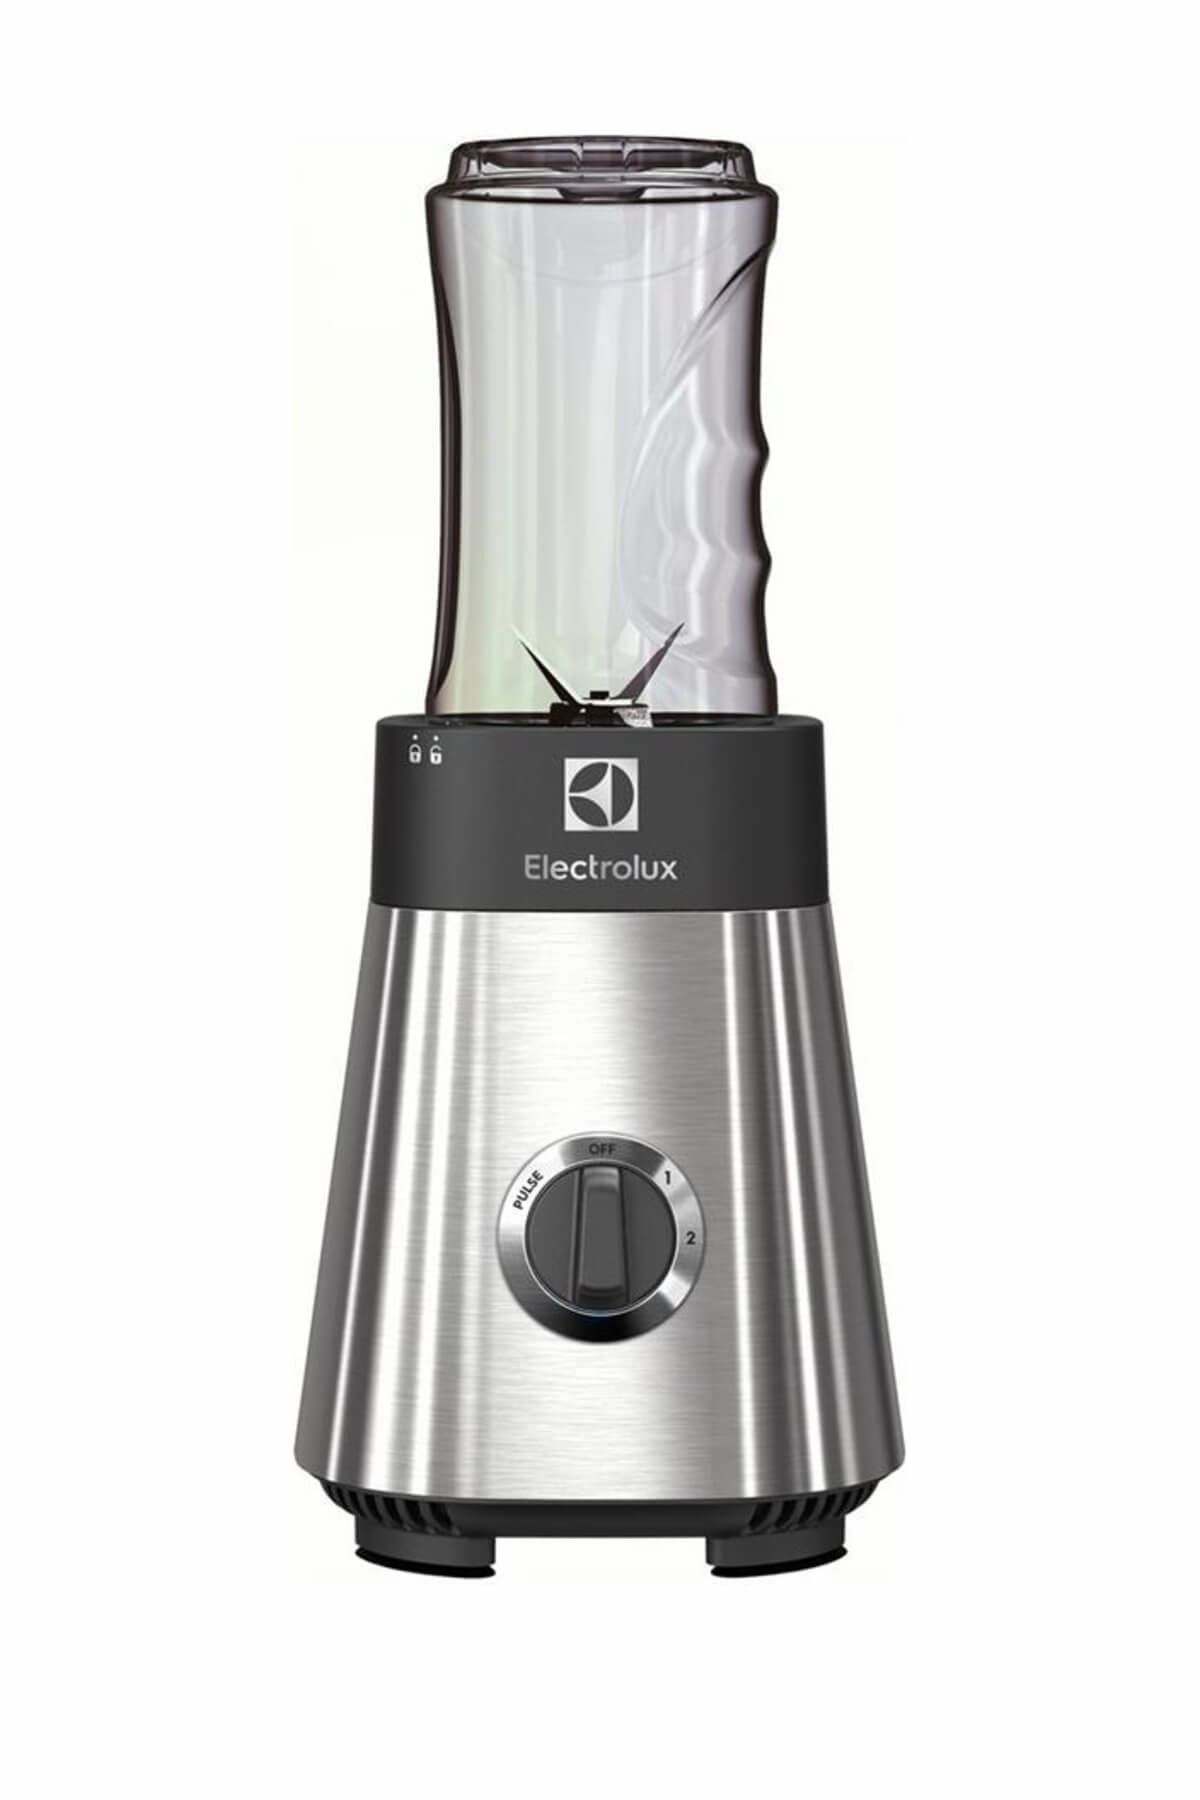 Electrolux ESB2900 400 W İlave Şişeli Kahve Öğütücülü Sports Blender